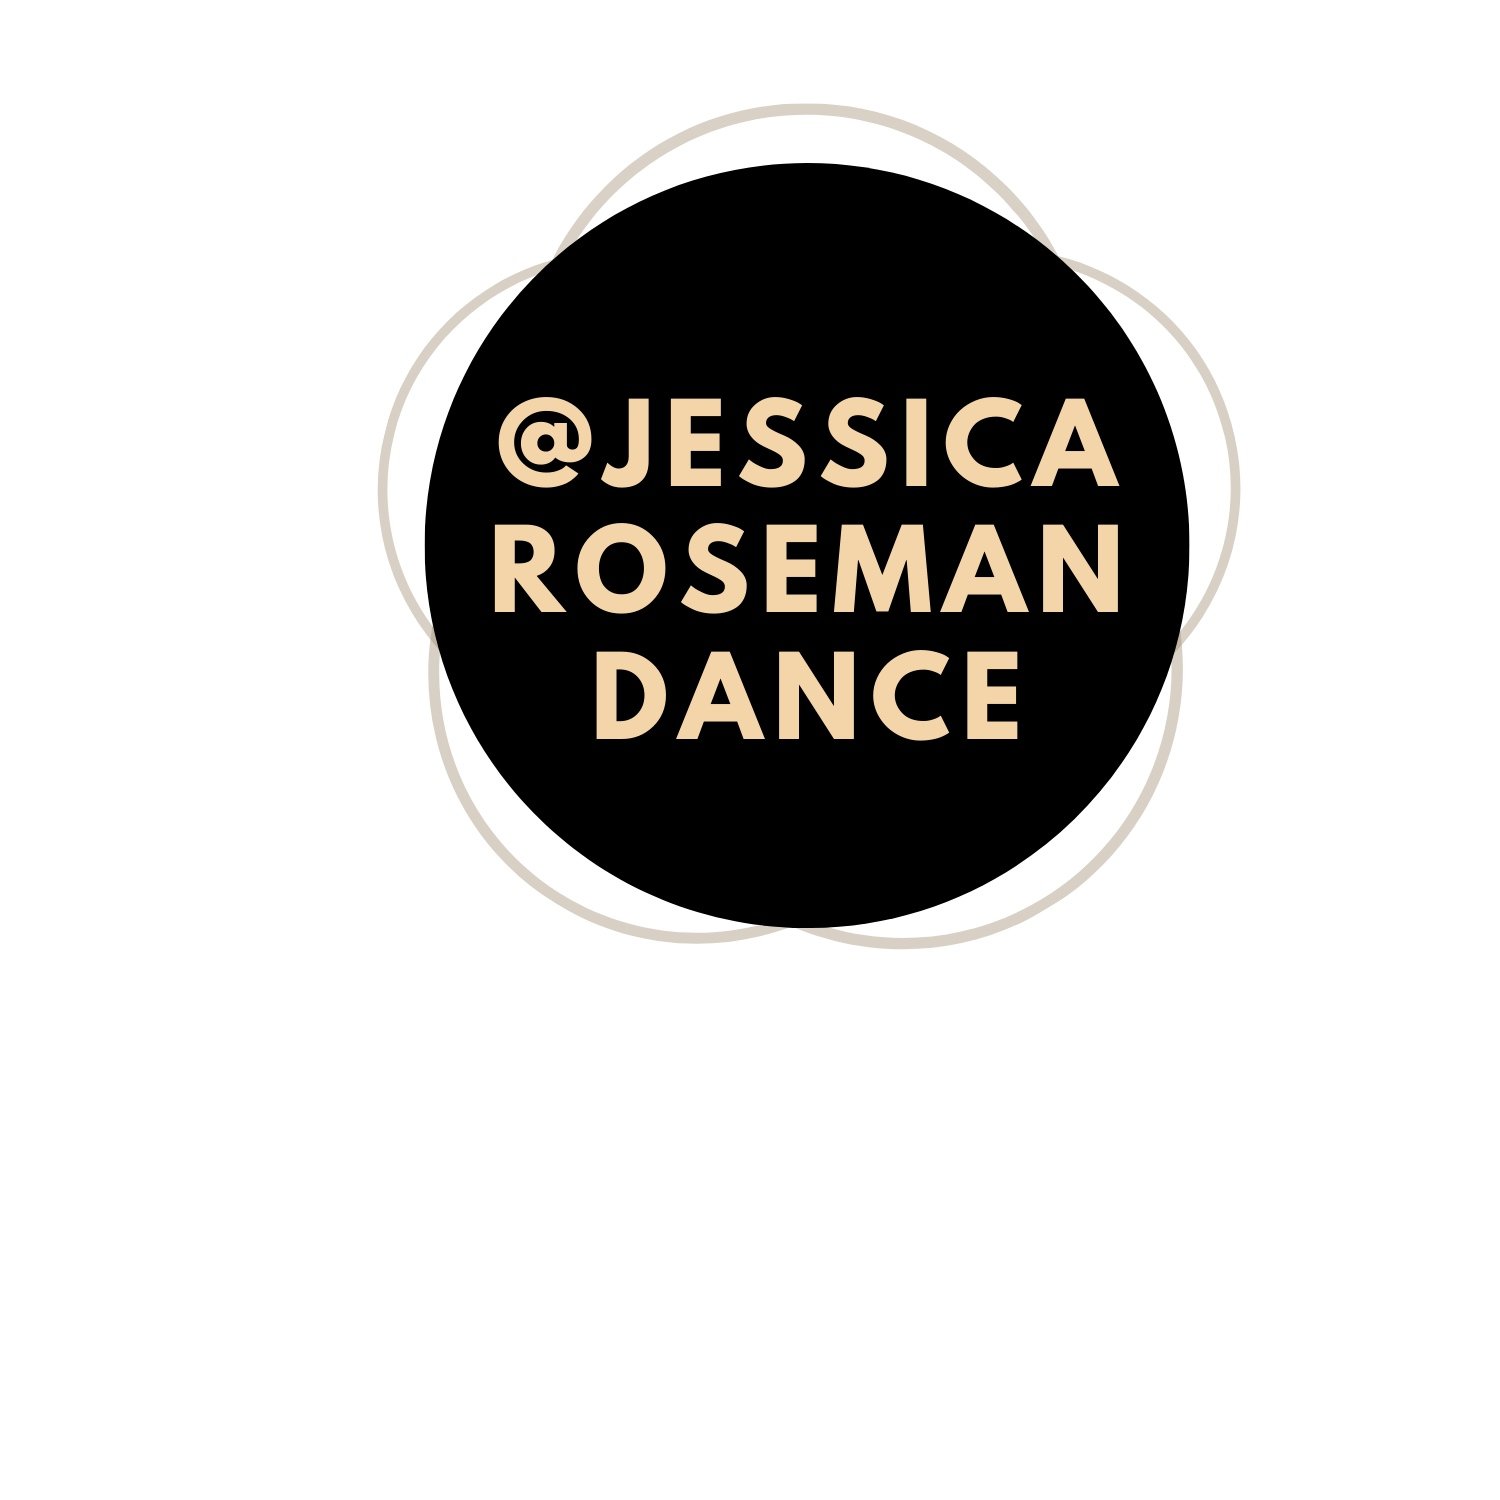 Jessica Roseman Dance